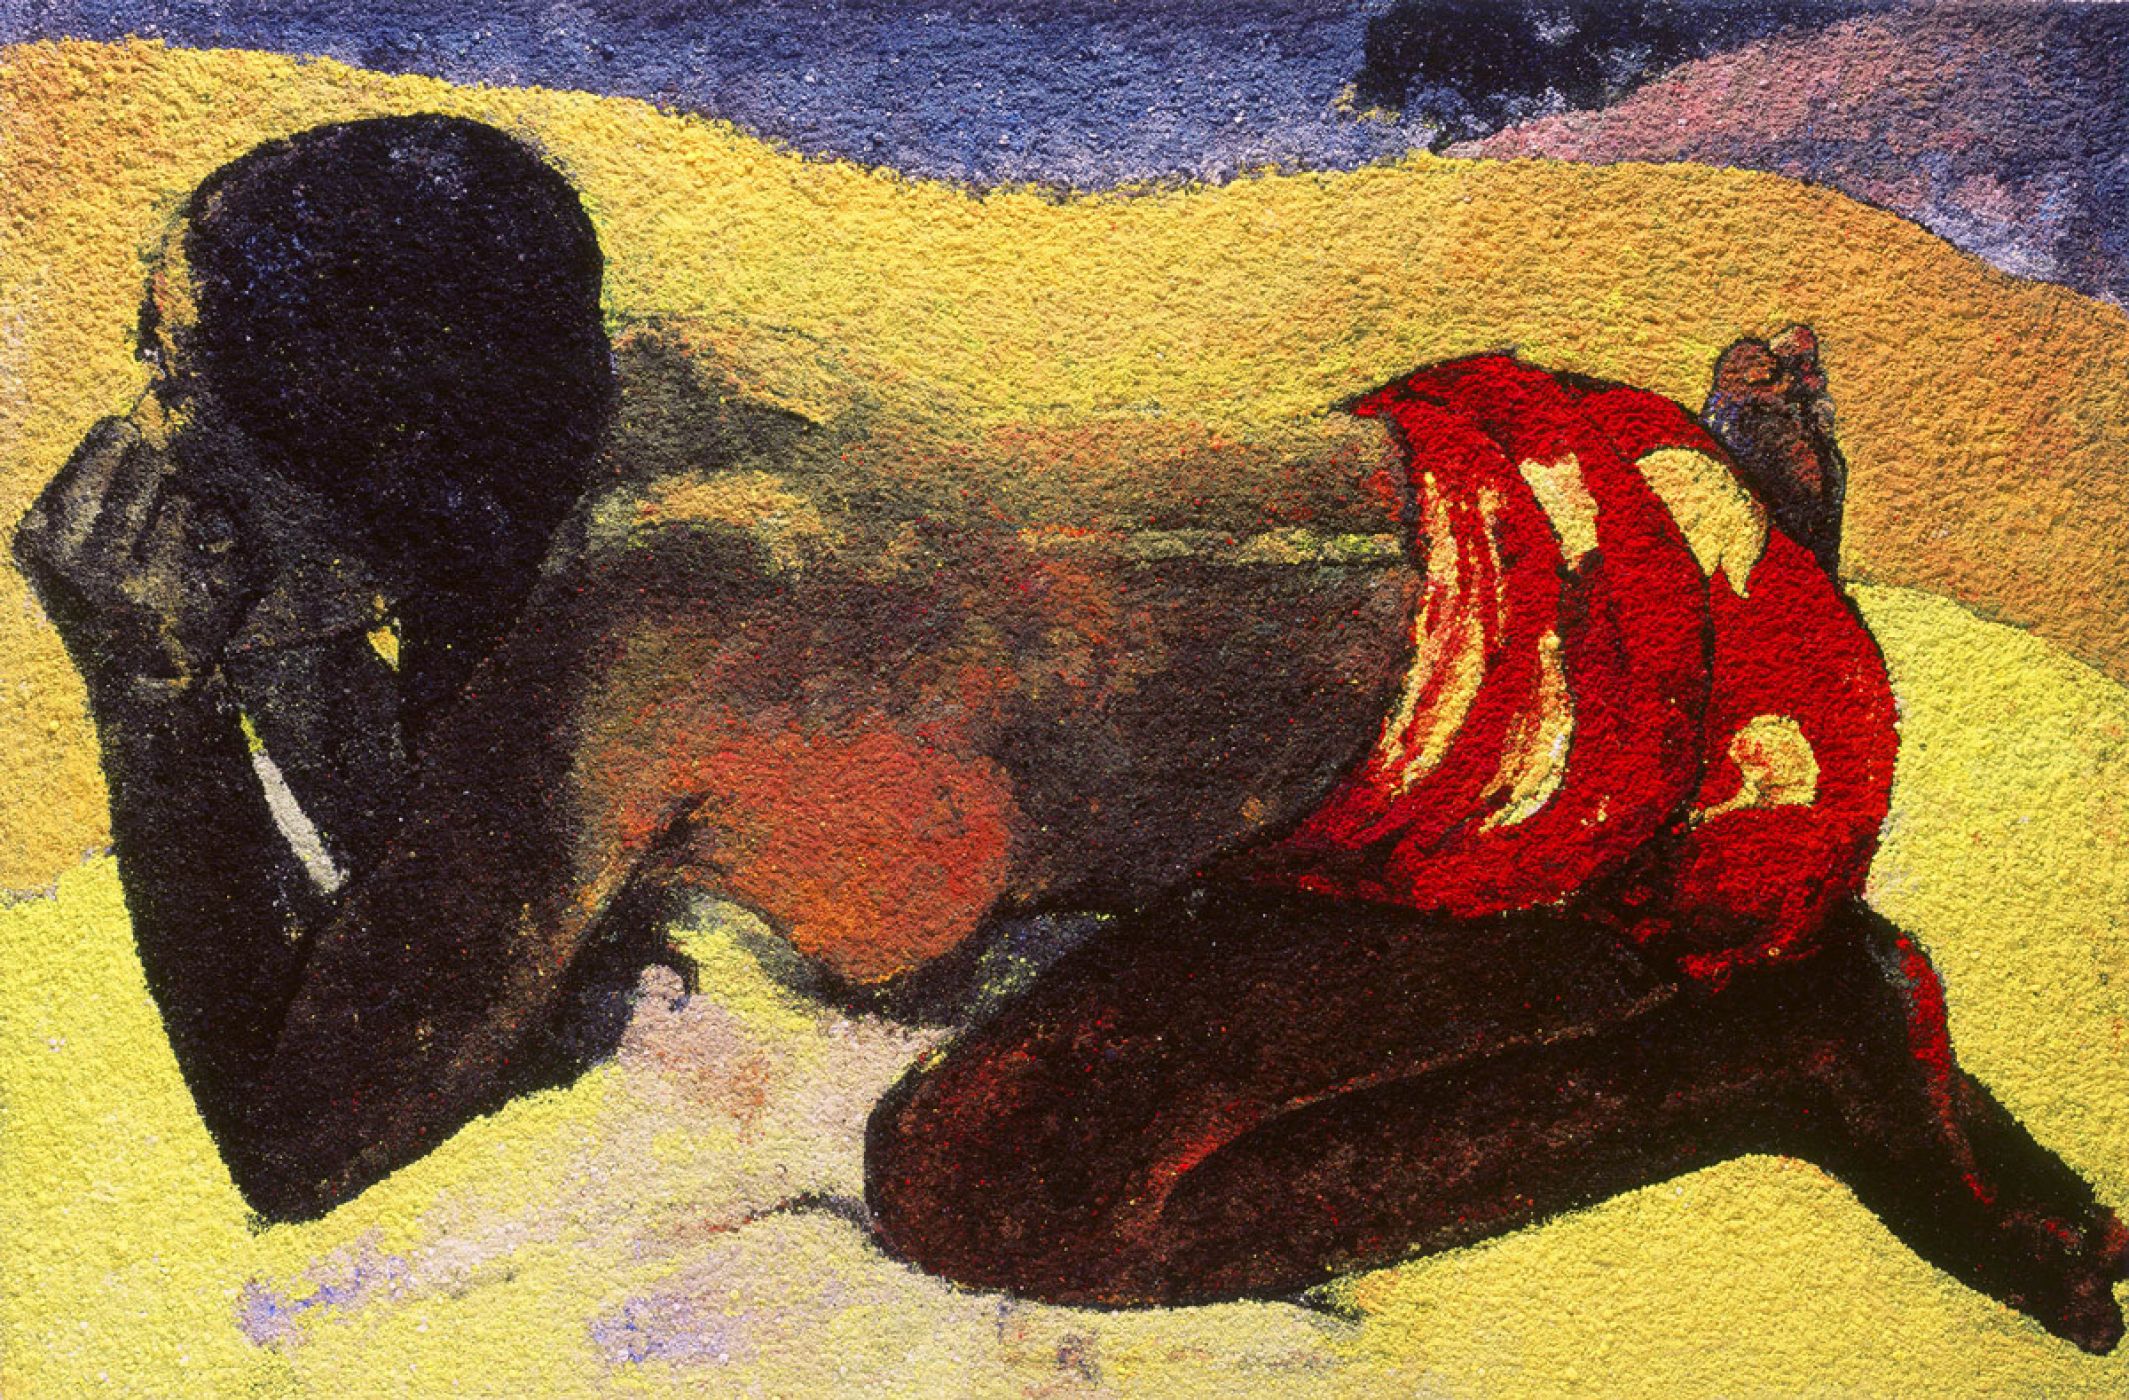 Vik Muniz, “Otahi (Alone), after Paul Gauguin”, 2006